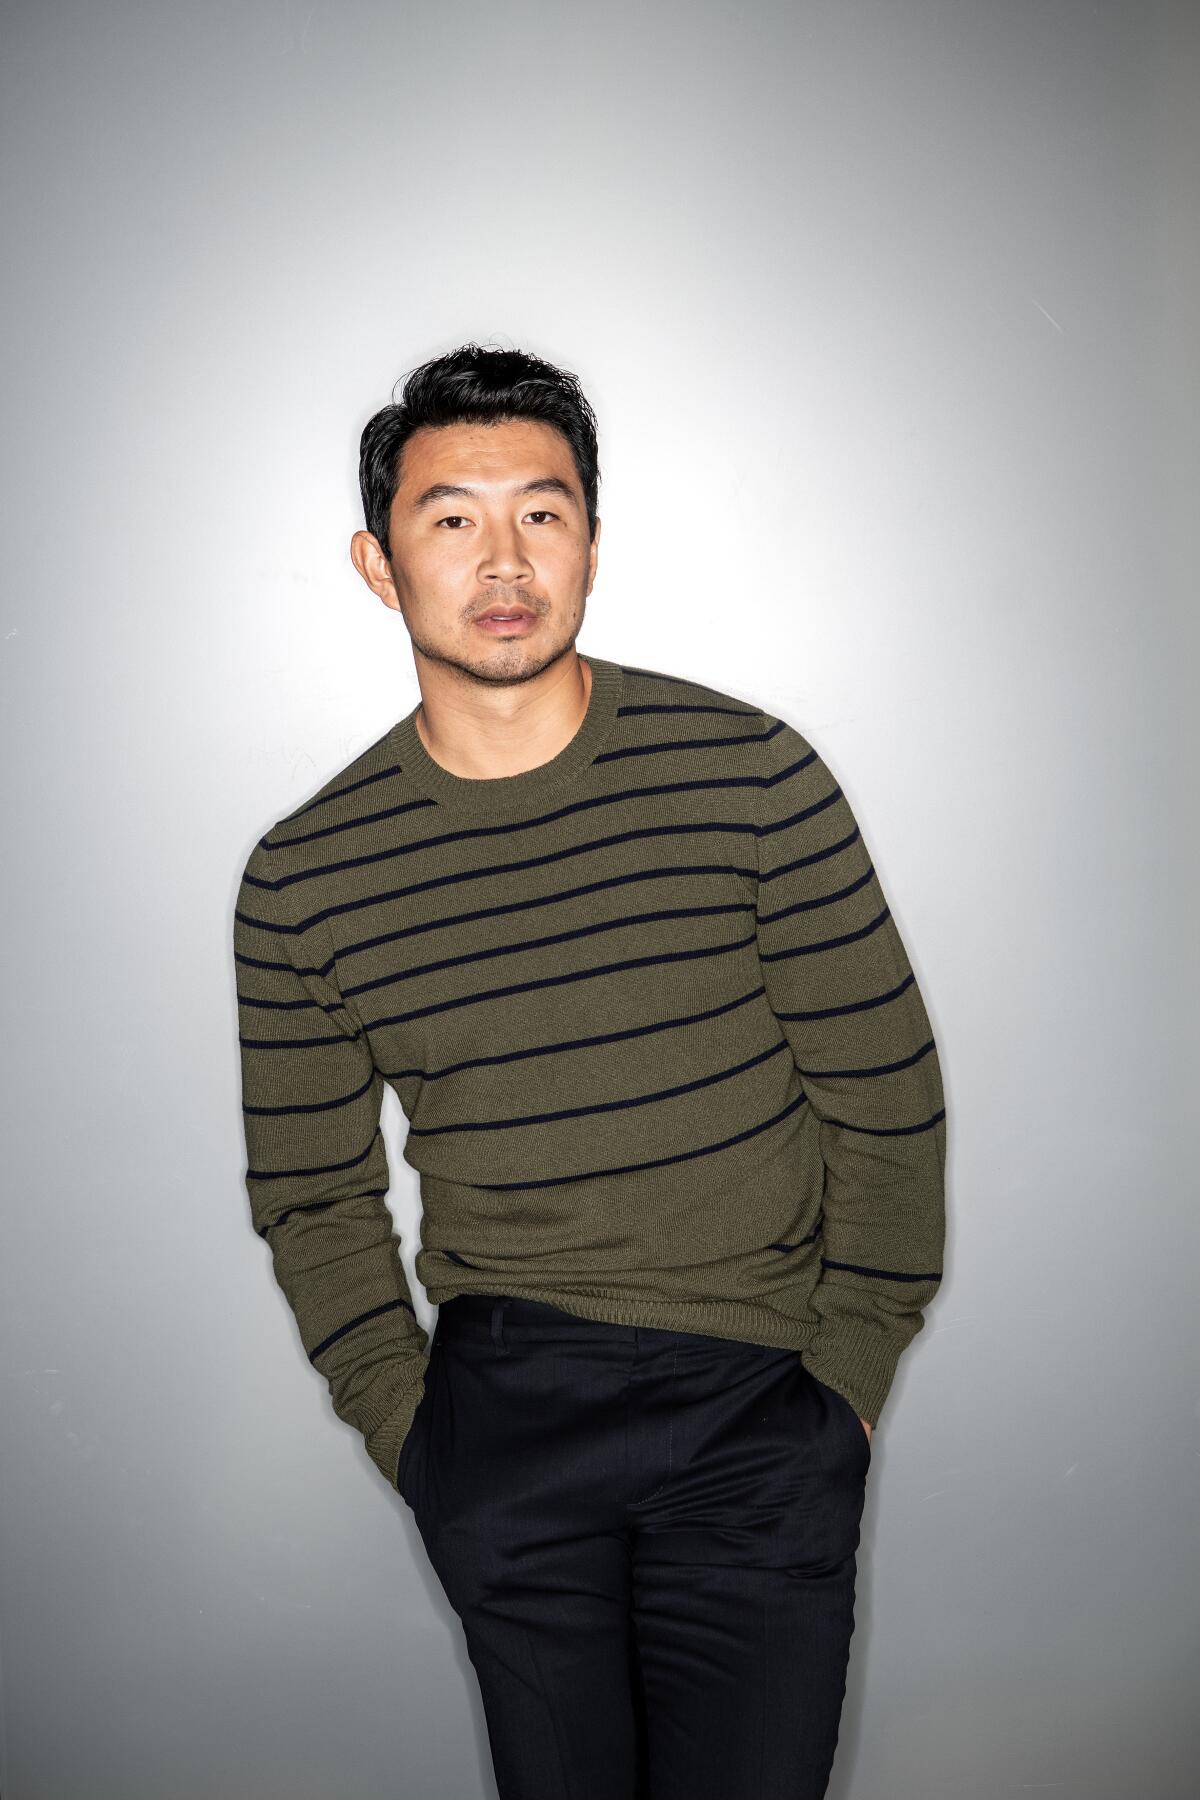 Portrait of actor Simu Liu in a green and black striped sweater